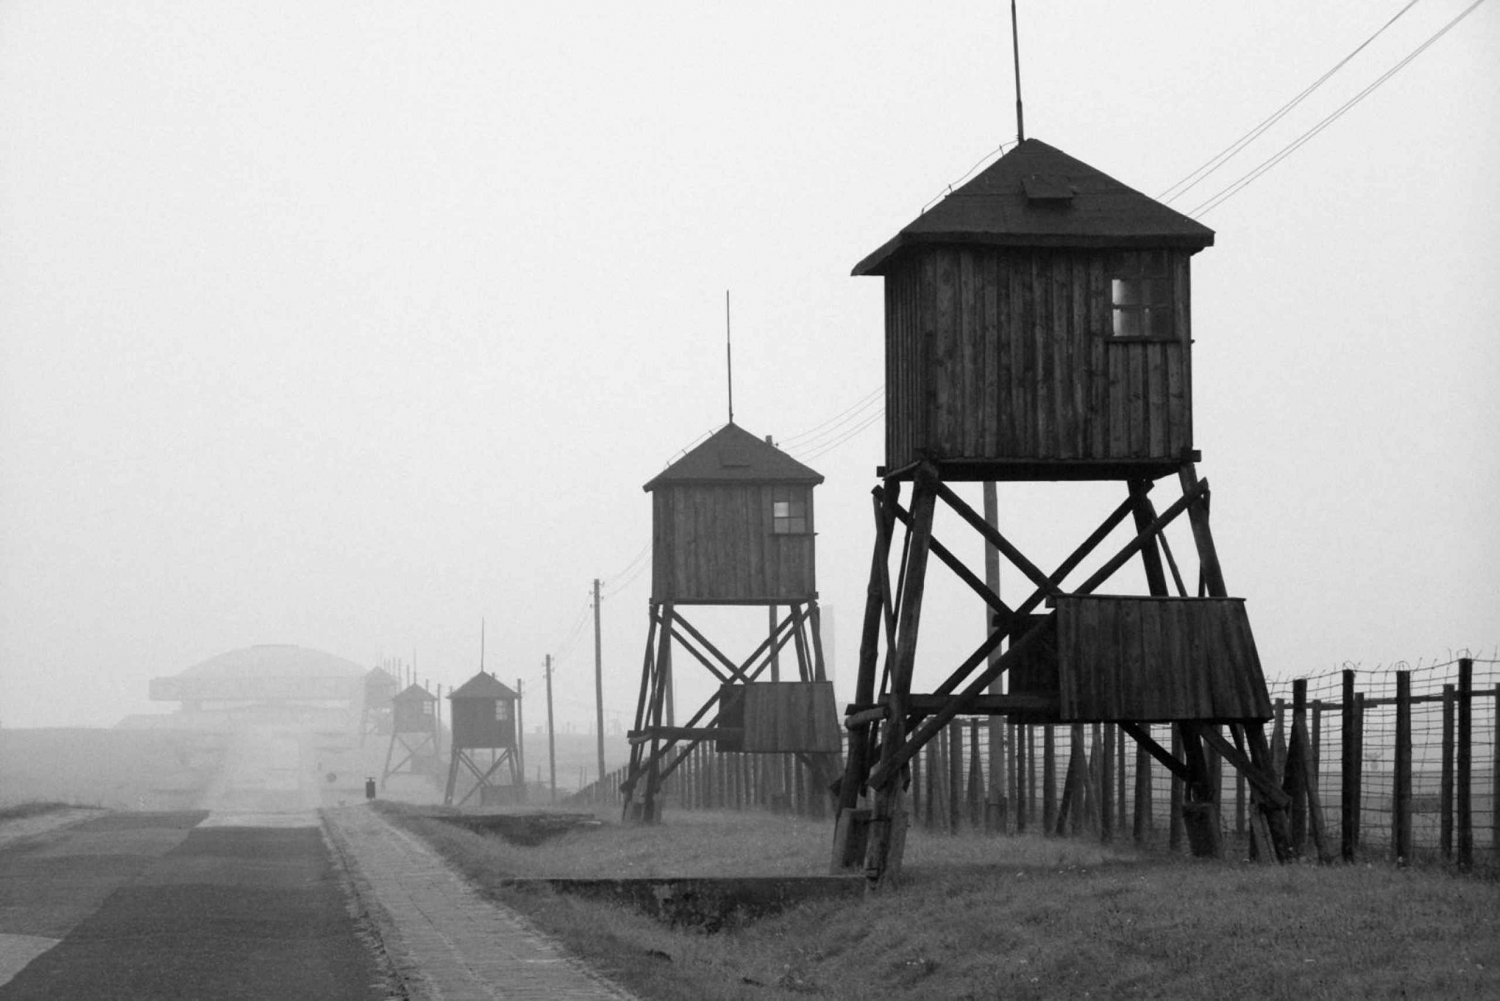 Varsovie : Camp de concentration de Majdanek, Lublin Excursion d'une journée en voiture